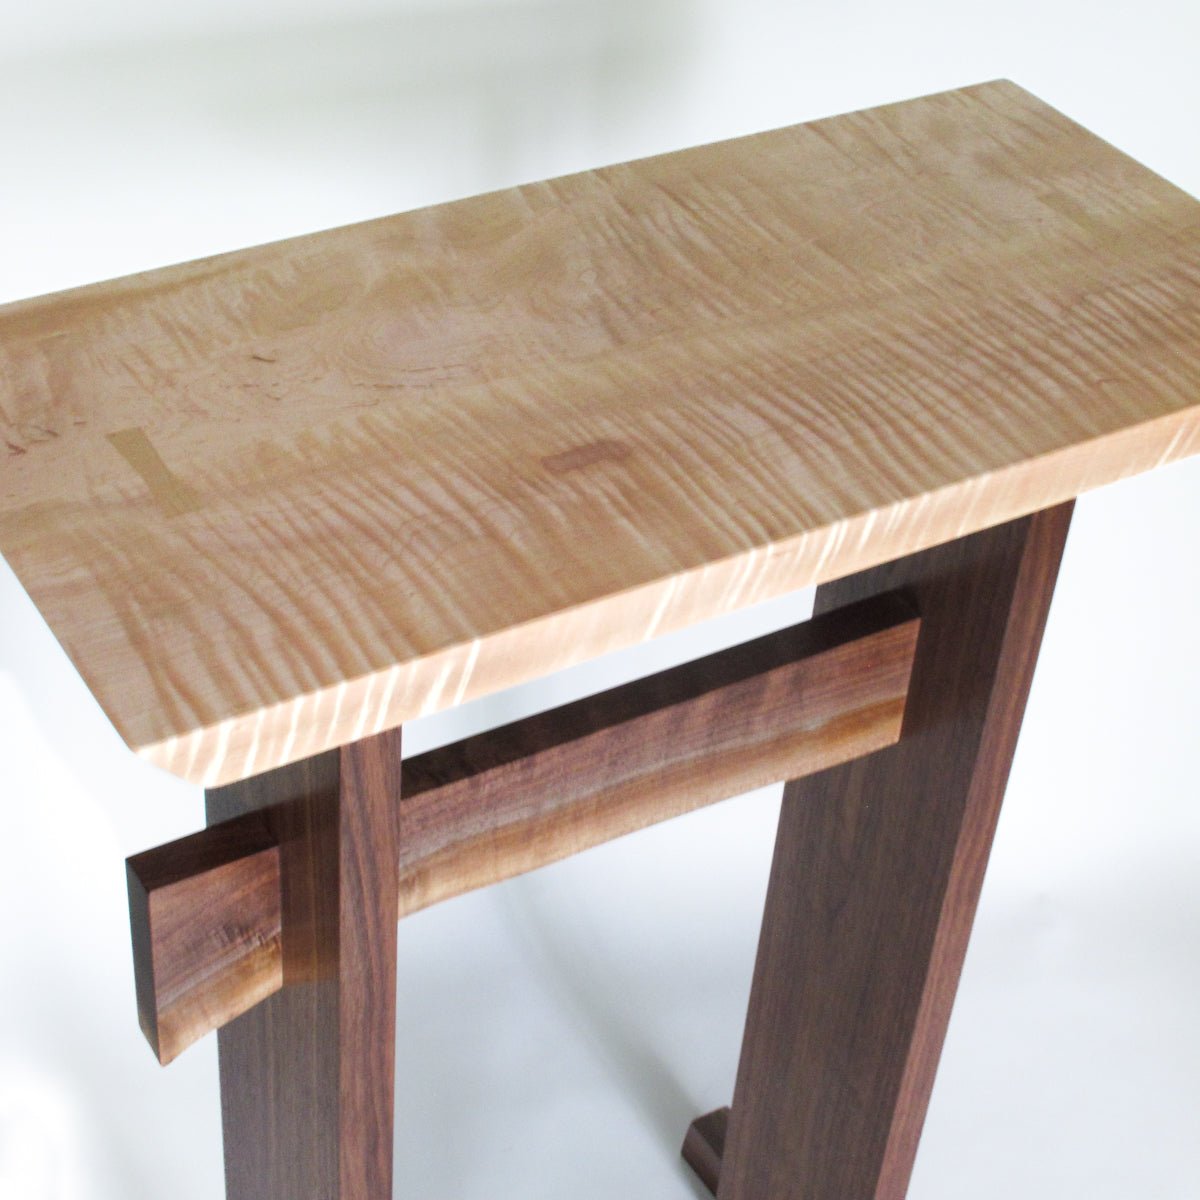 https://mokuzai-furniture.com/cdn/shop/products/tall-writing-desk-MokuzaiFurniture-250694.jpg?v=1678511561&width=1445